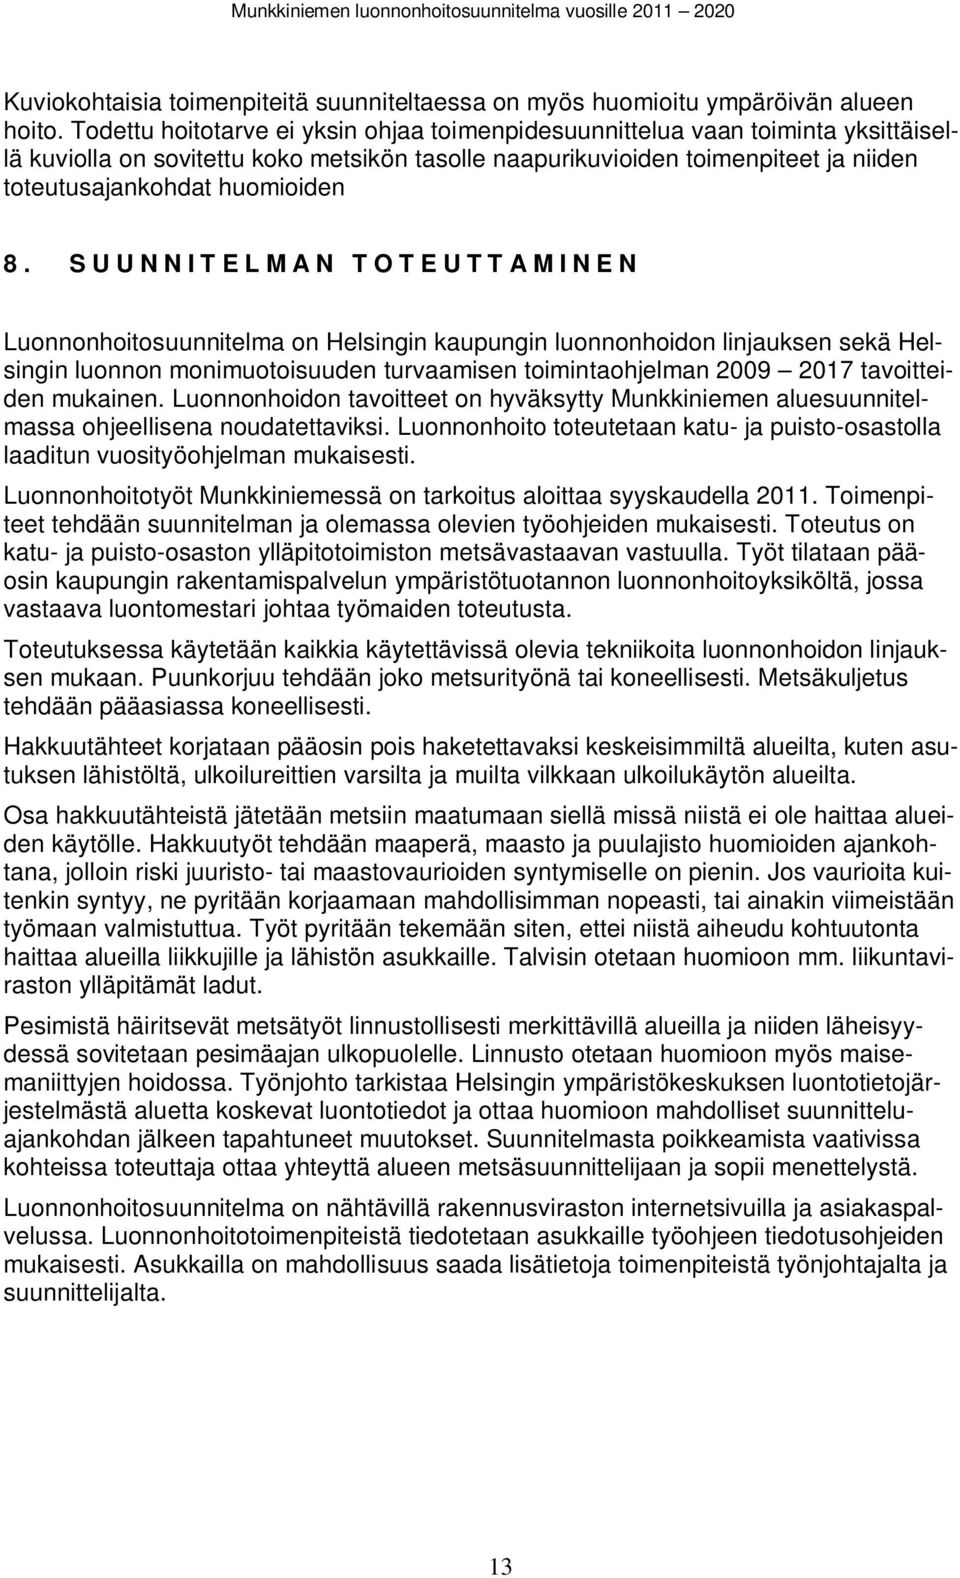 SUUNNITELMAN TOTEUTTAMINEN Luonnonhoitosuunnitela on Helsingin kaupungin luonnonhoidon linjauksen sekä Helsingin luonnon oniuotoisuuden turaaisen toiintaohjelan 2009 2017 taoitteiden ukainen.